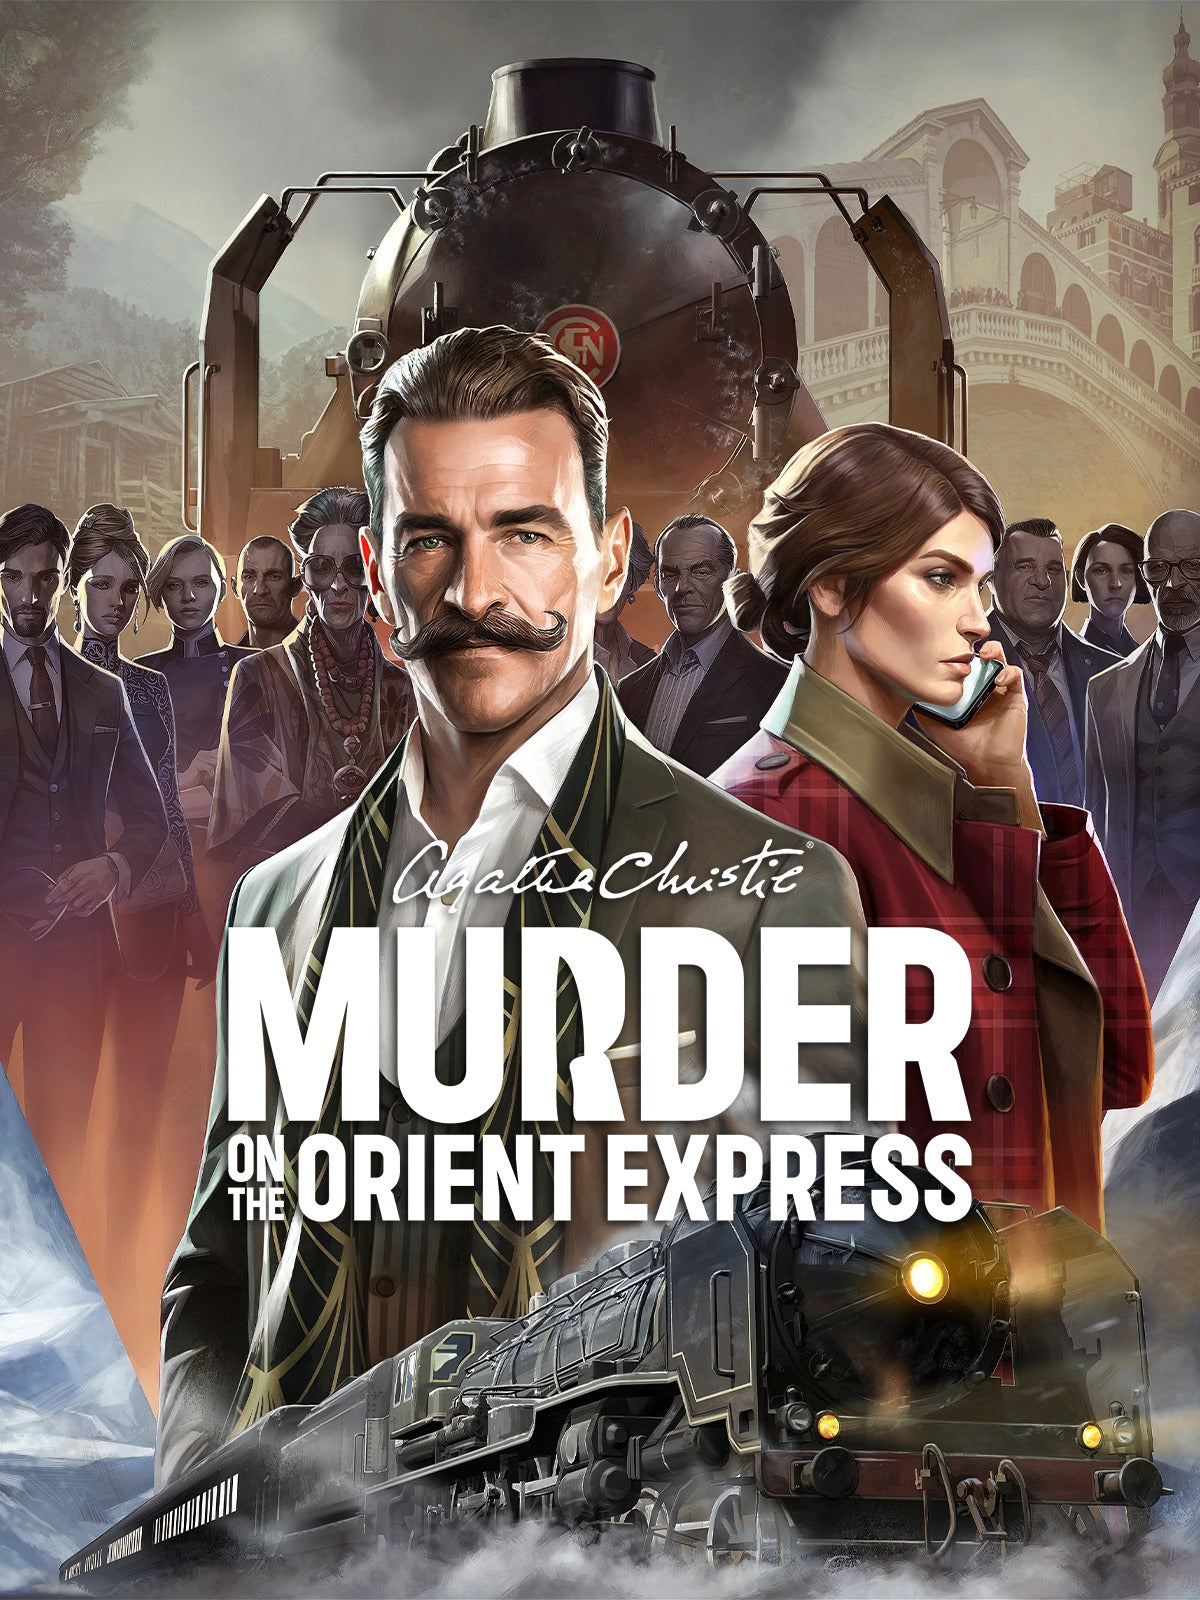 Agatha Christie - Murder on the Orient Express (Standard Edition) - למחשב - EXON - גיימינג ותוכנות - משחקים ותוכנות למחשב ולאקס בוקס!